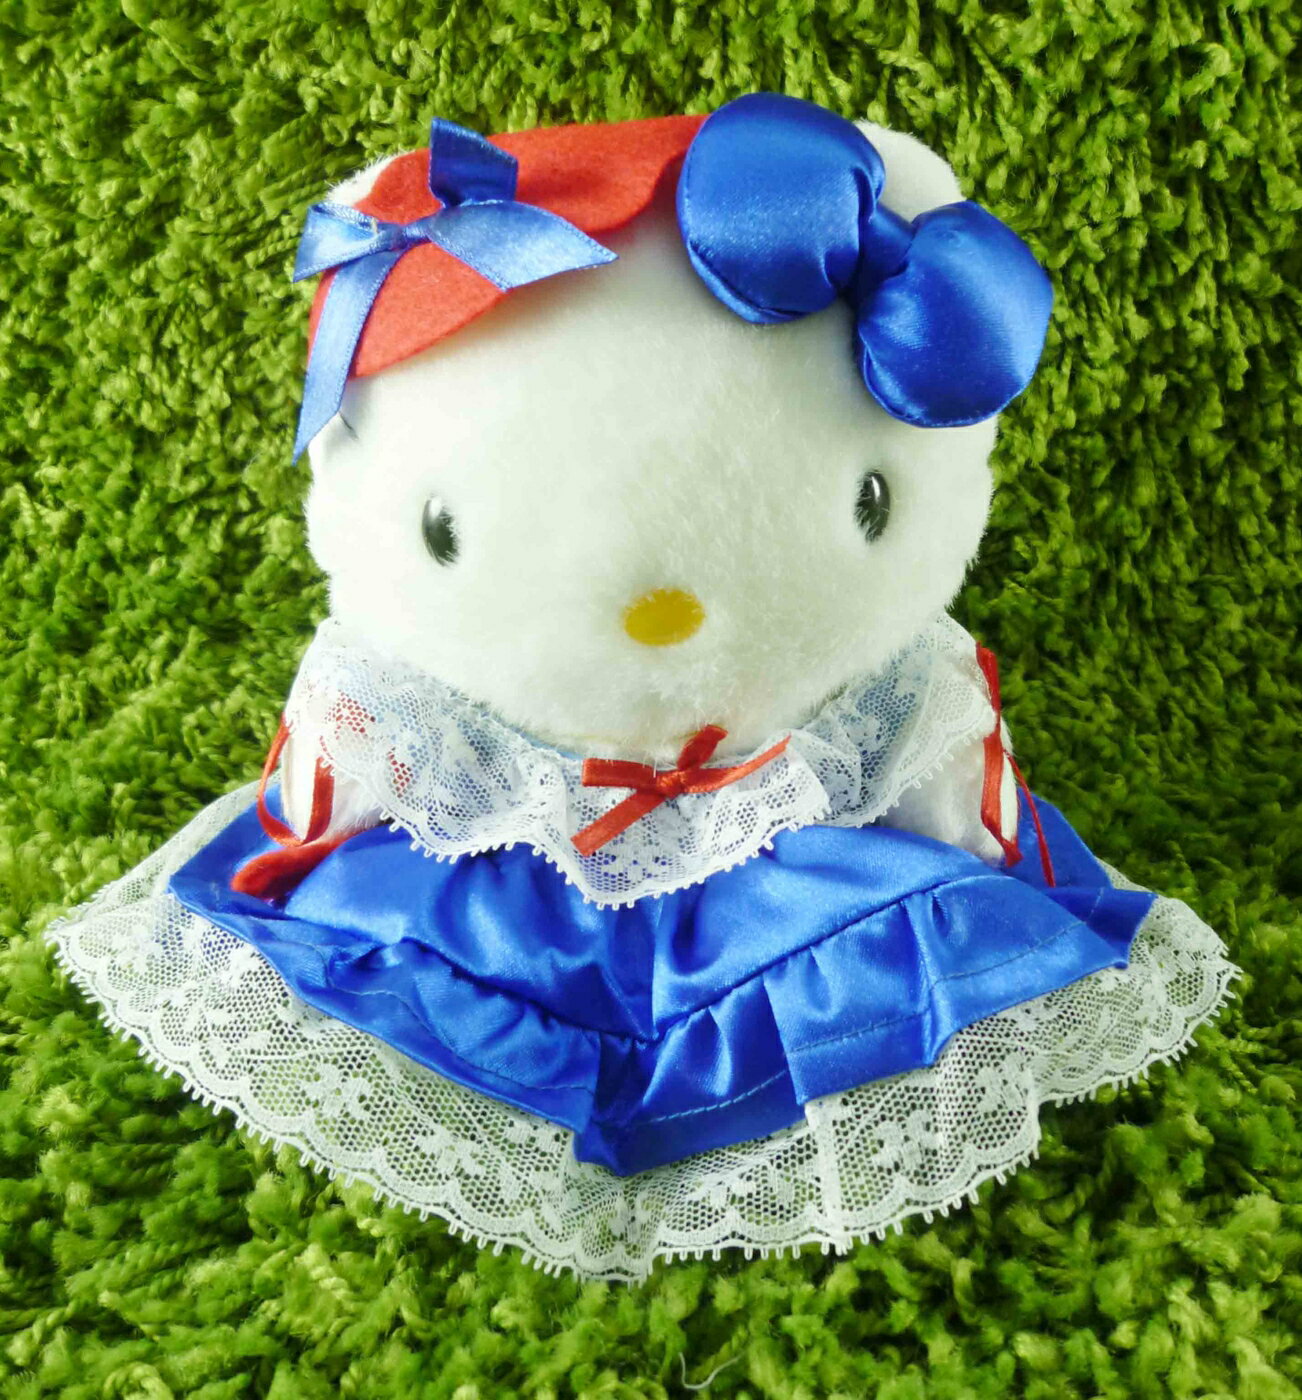 【震撼精品百貨】Hello Kitty 凱蒂貓 KITTY絨毛娃娃-法國服飾-藍紅 震撼日式精品百貨